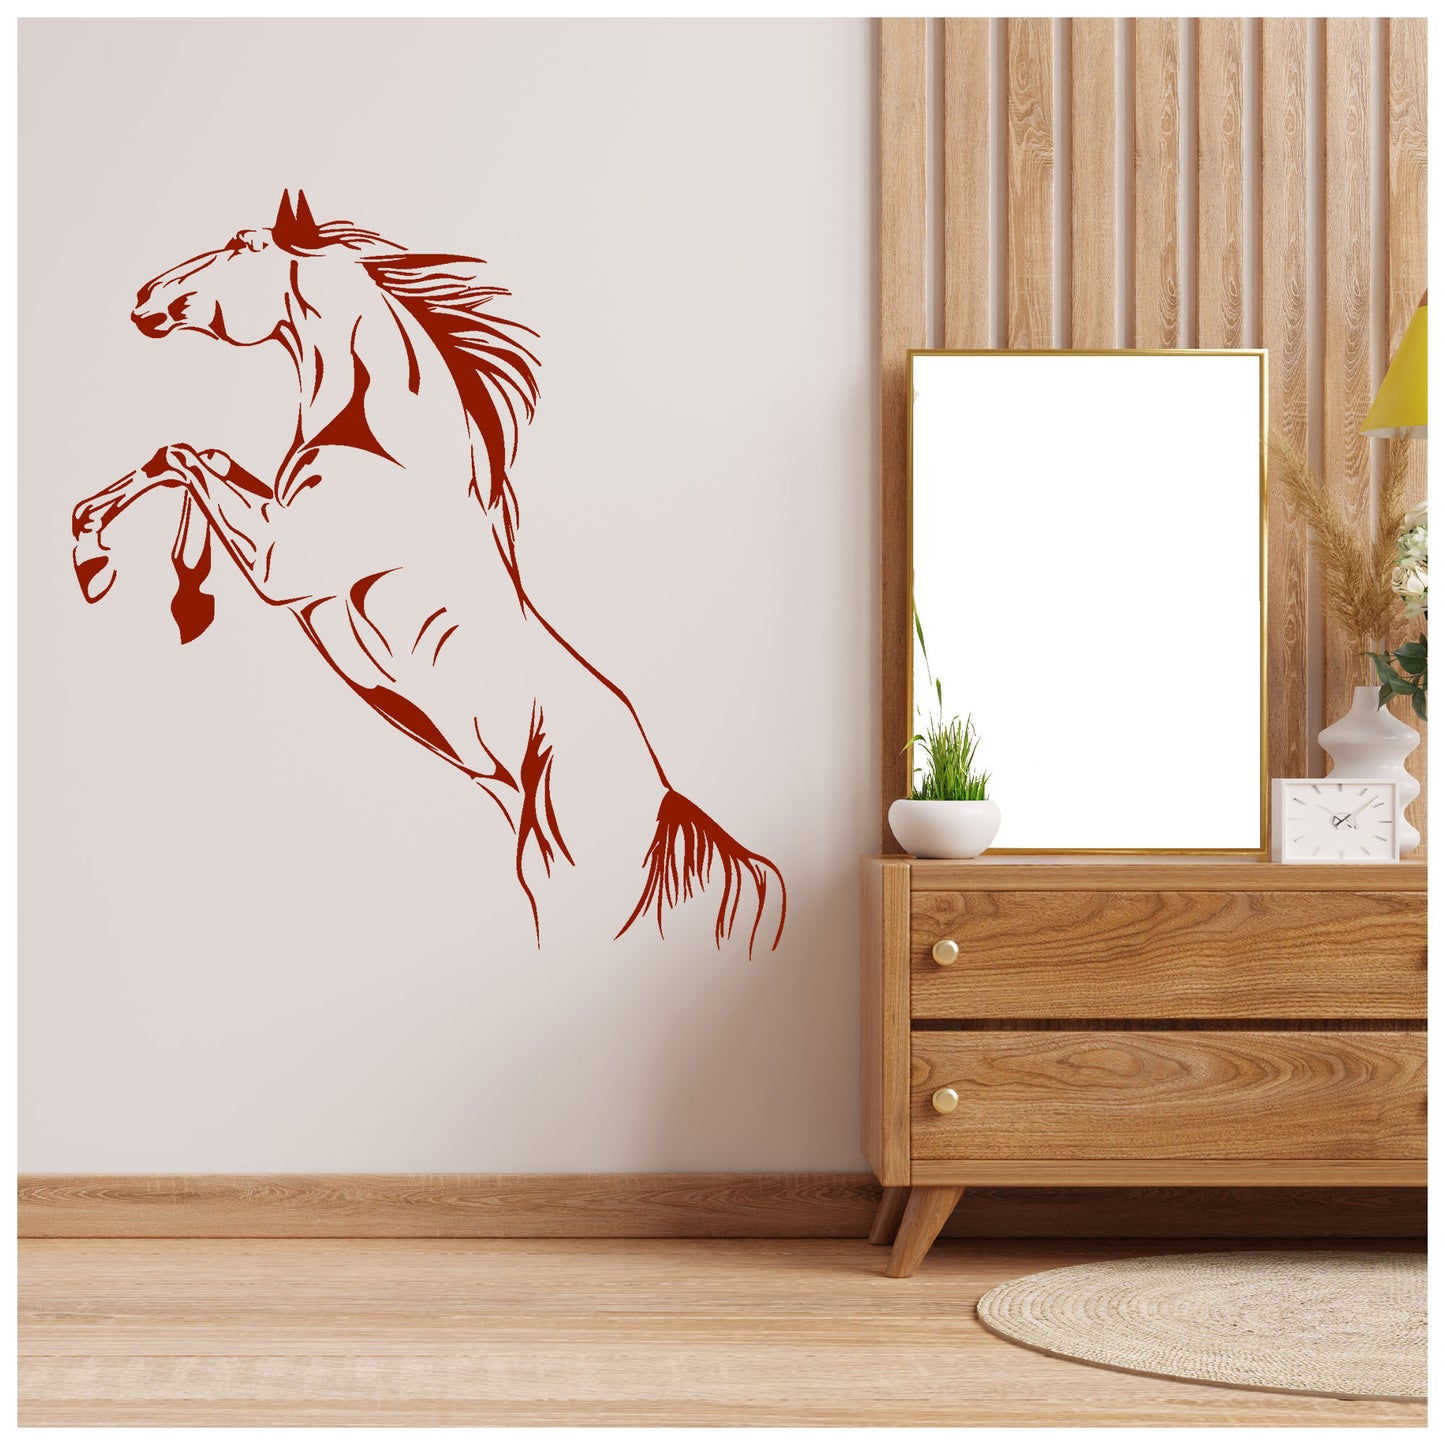 Running Horse Wall Stencil (KHSNT392)